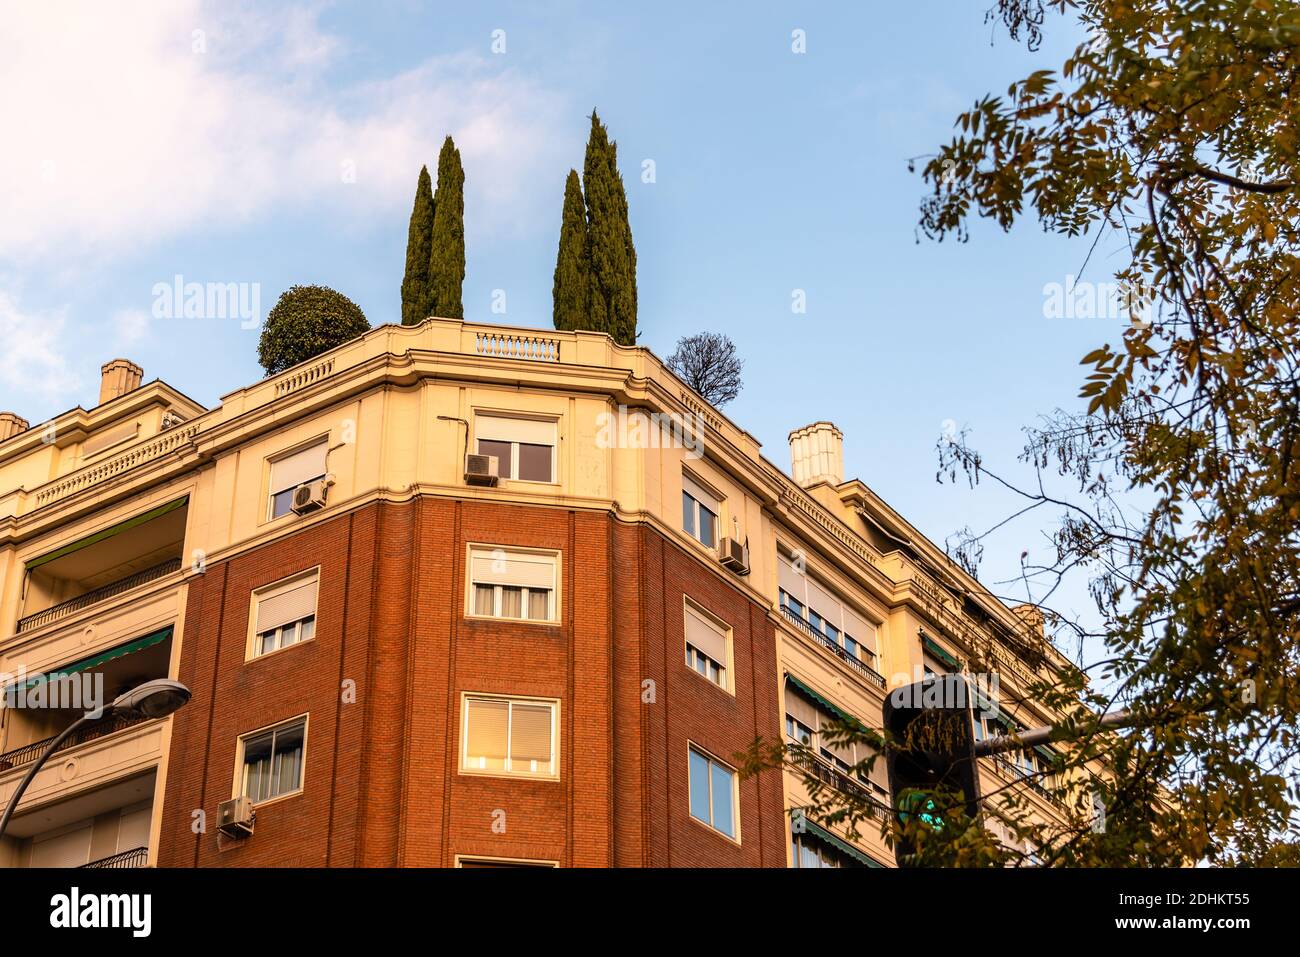 Stadtbild mit luxuriösen Wohnhäusern im Madrider Stadtteil Salamanca. Bäume auf dem Dach Stockfoto